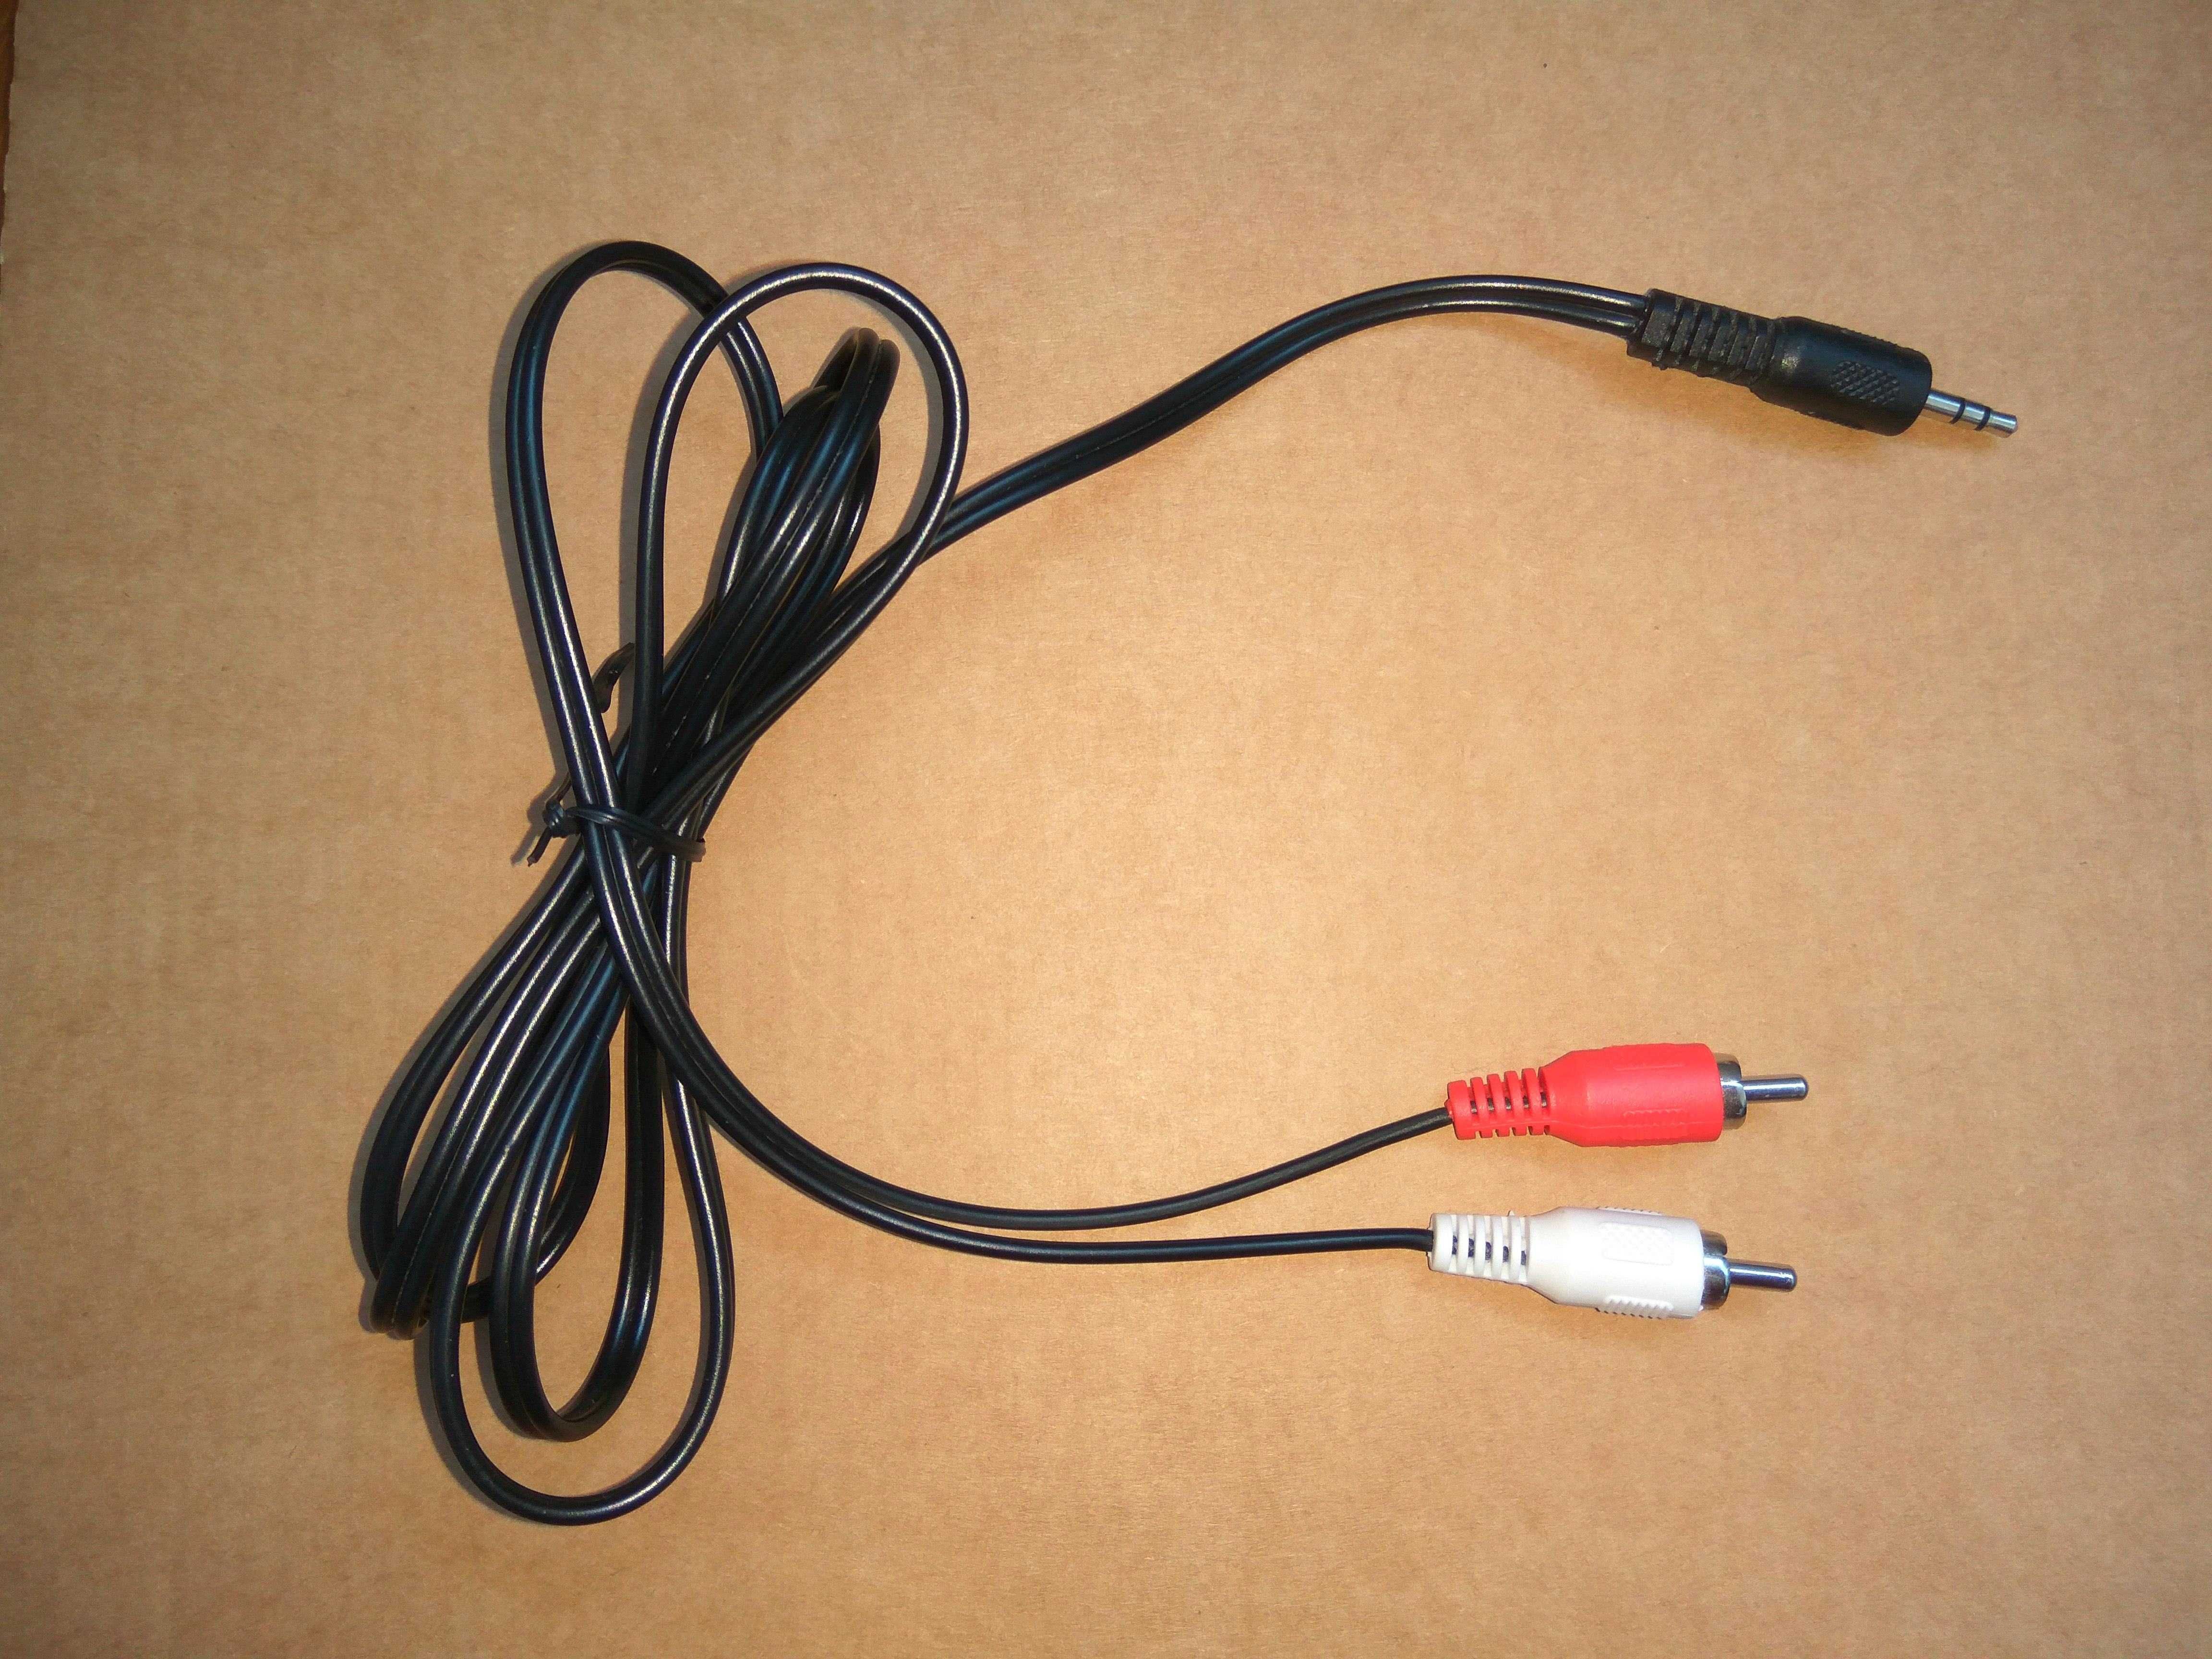 Шнуры кабели разные аудио 1,5м межблочный Аукс AUX телефона ноутбука